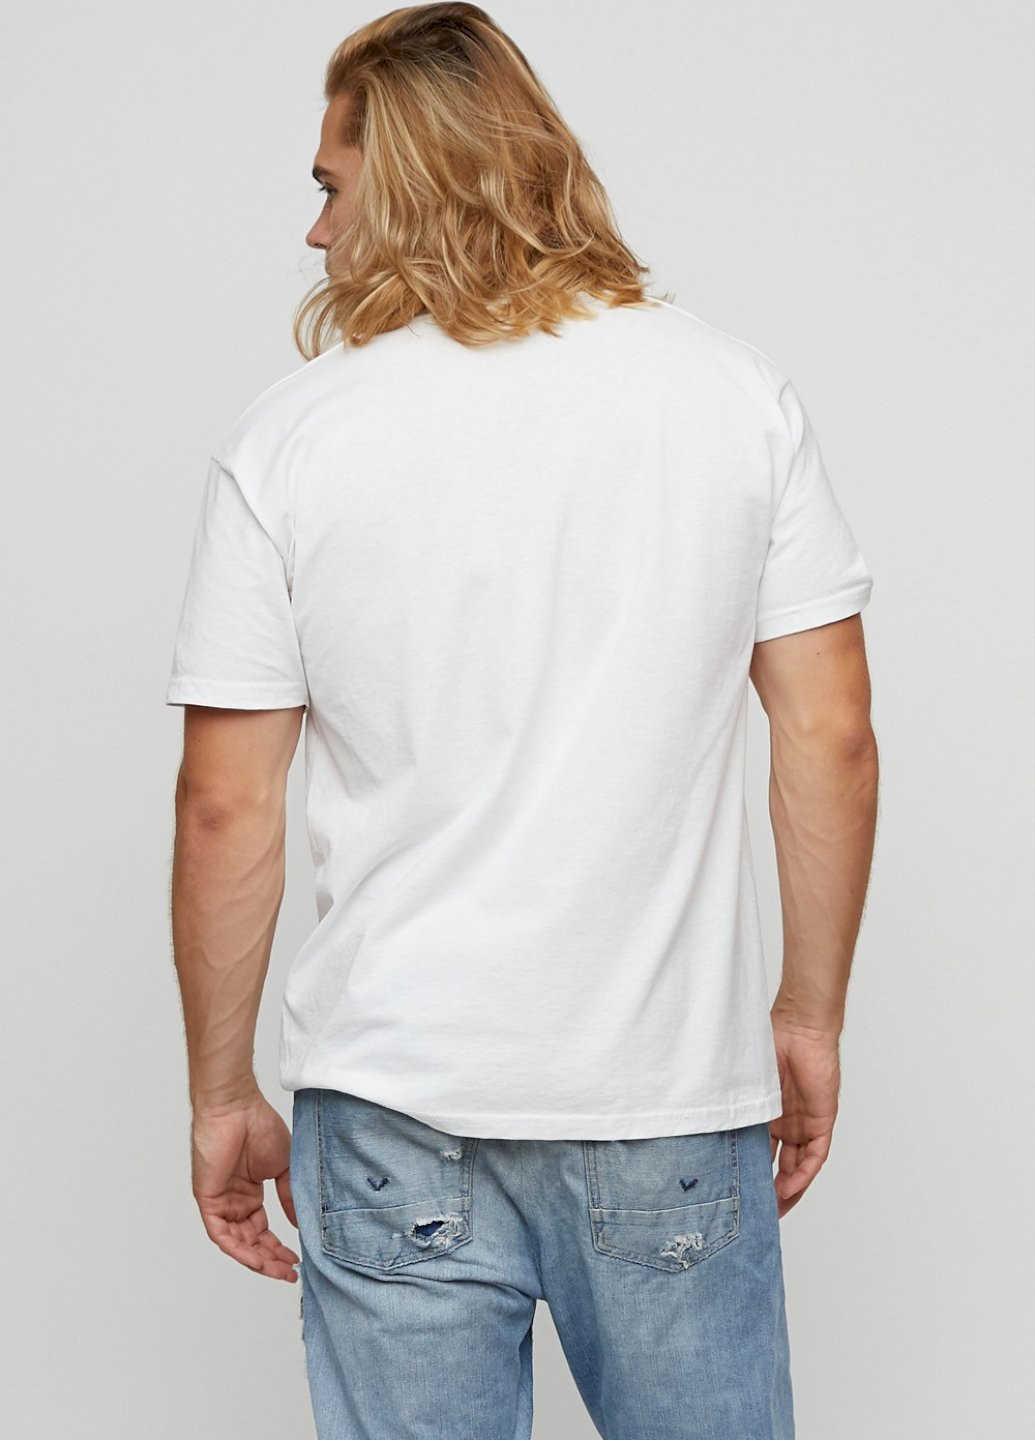 Белая футболка мужская basic /air print/ YAPPI